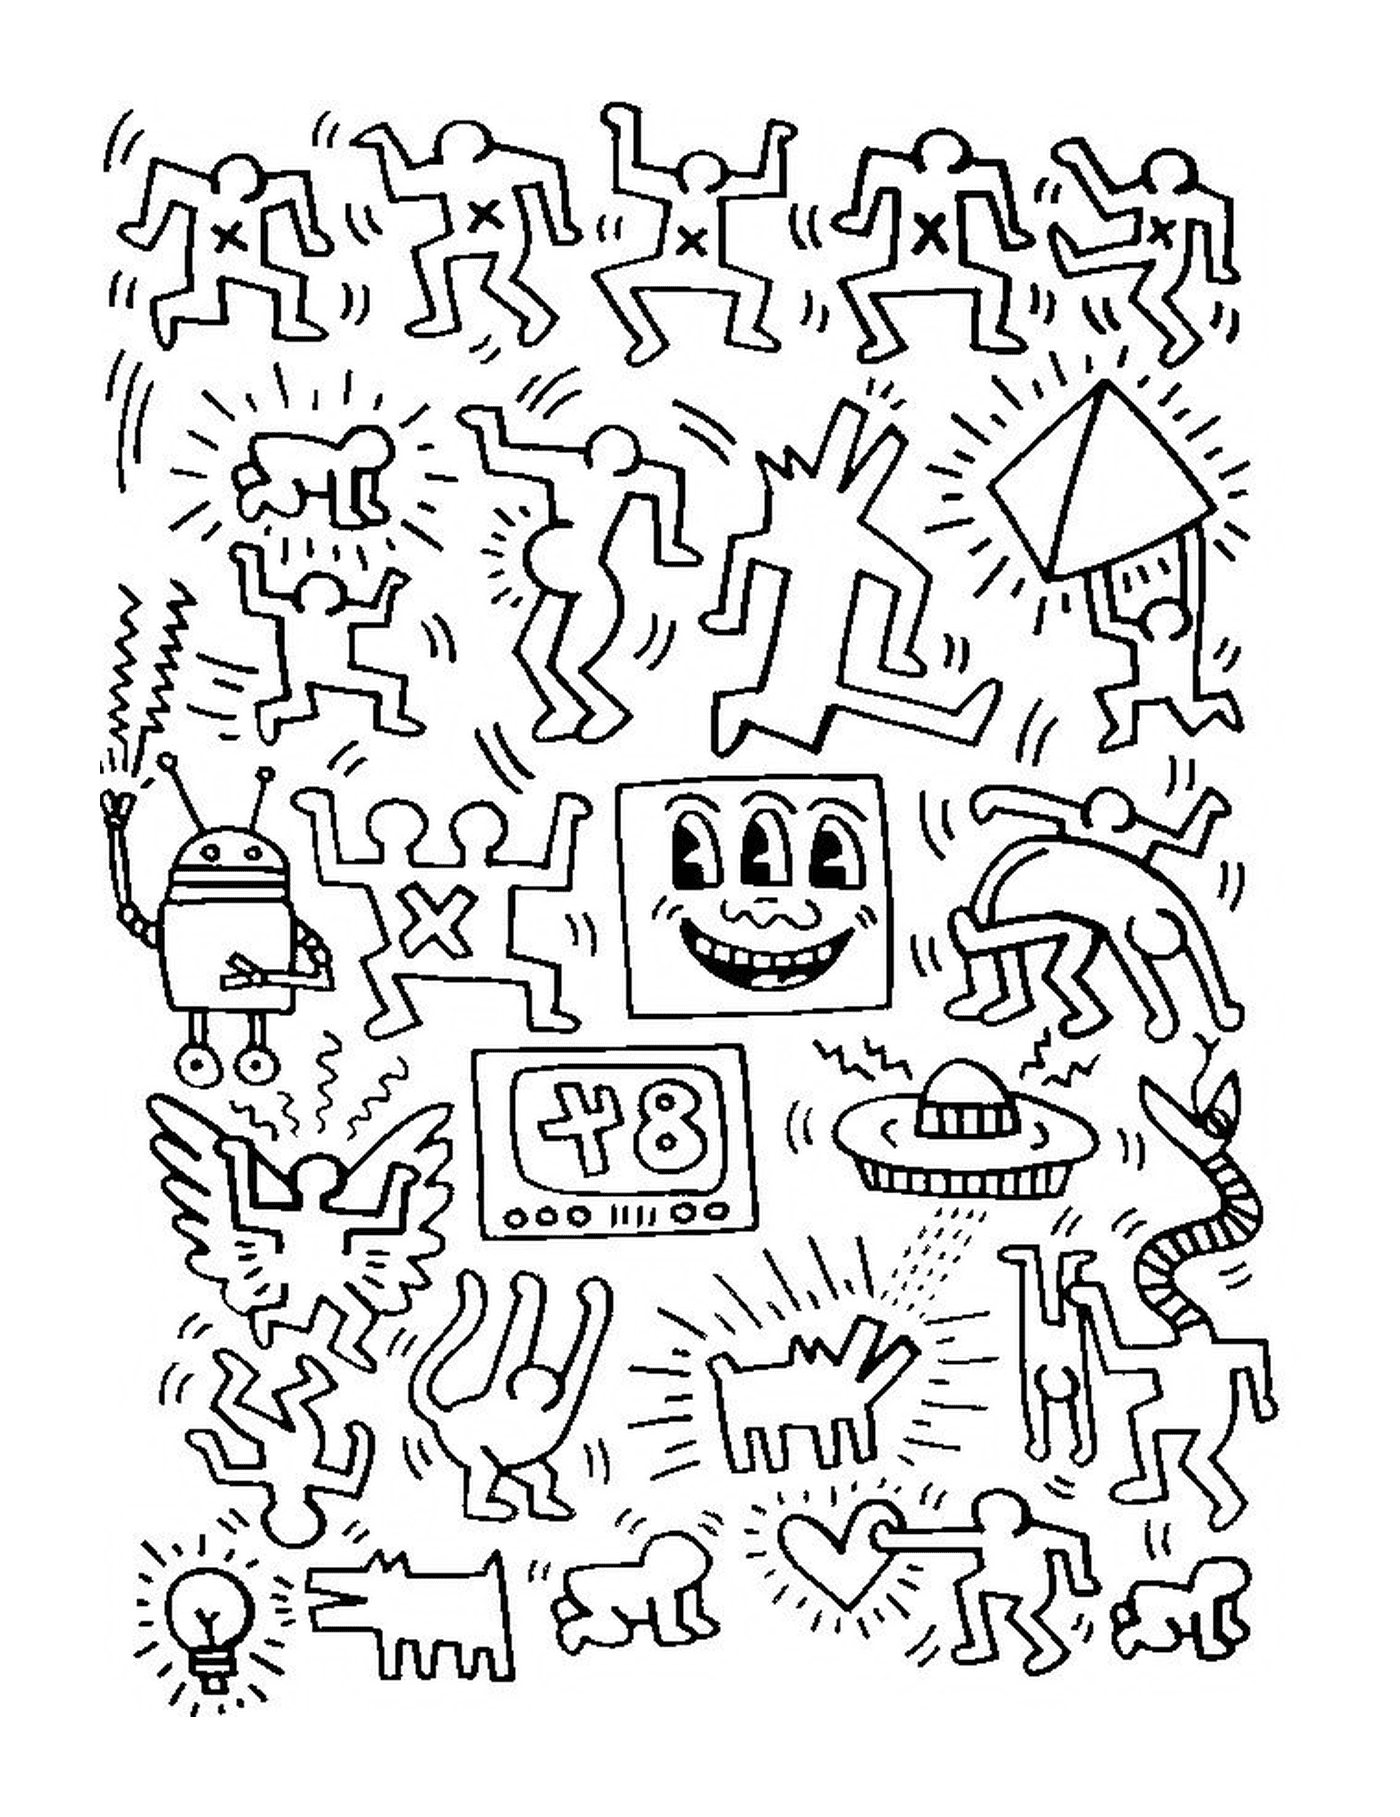  un grupo de personas según Keith Haring 